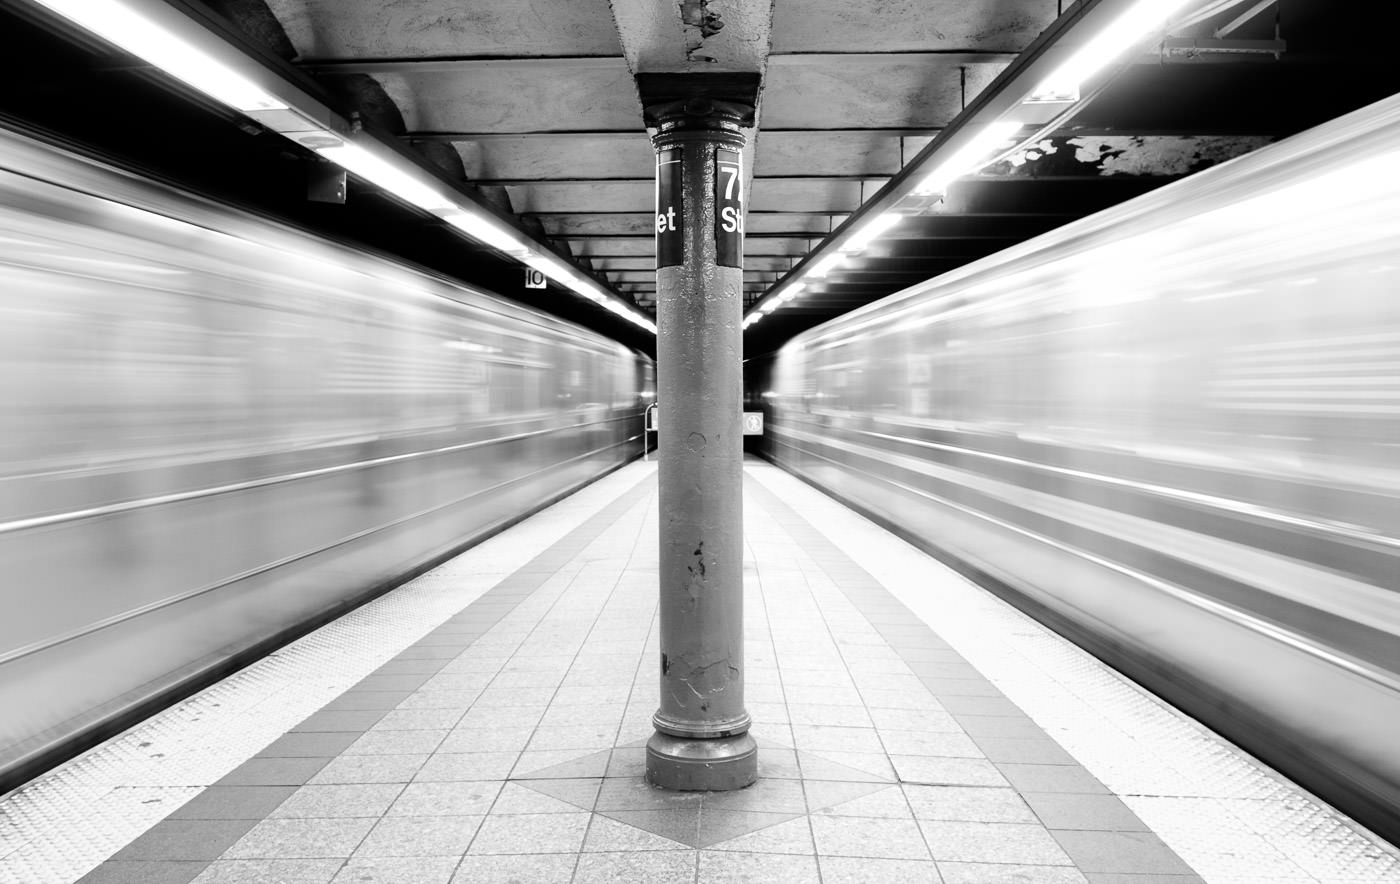 NYC tunnelbanetåg rusar förbi på båda sidor av plattformen, vilket skapar suddigt utrymme runt centrum